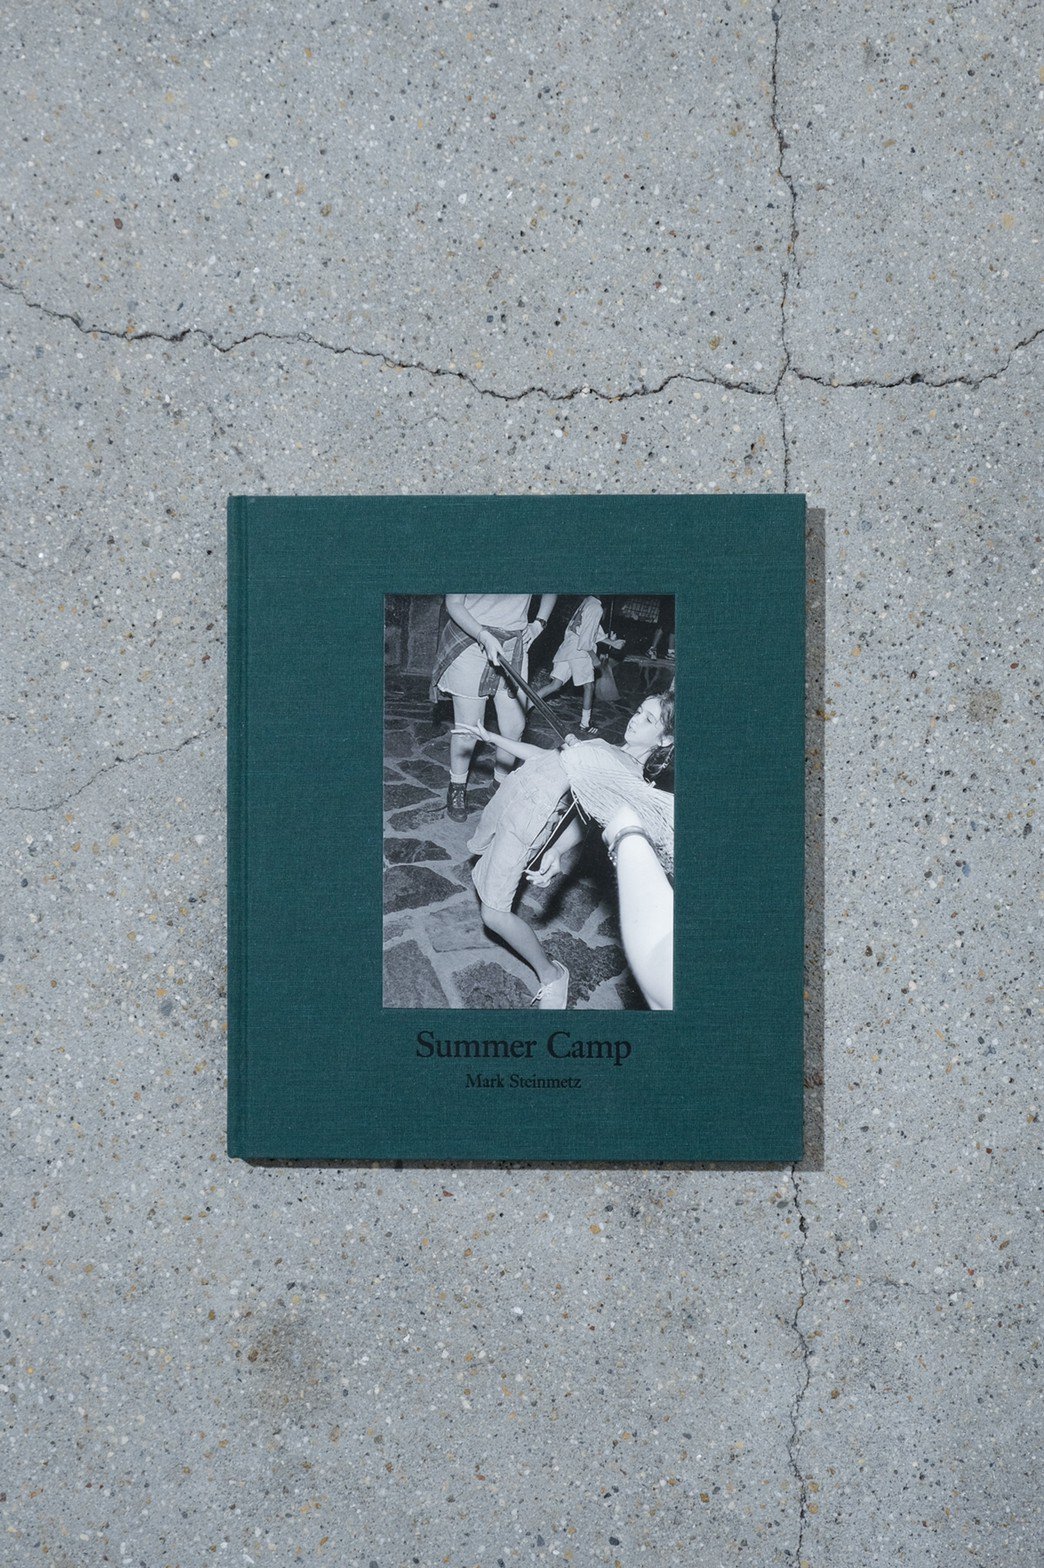 『SUMMER CAMP』by Mark Steinmetz